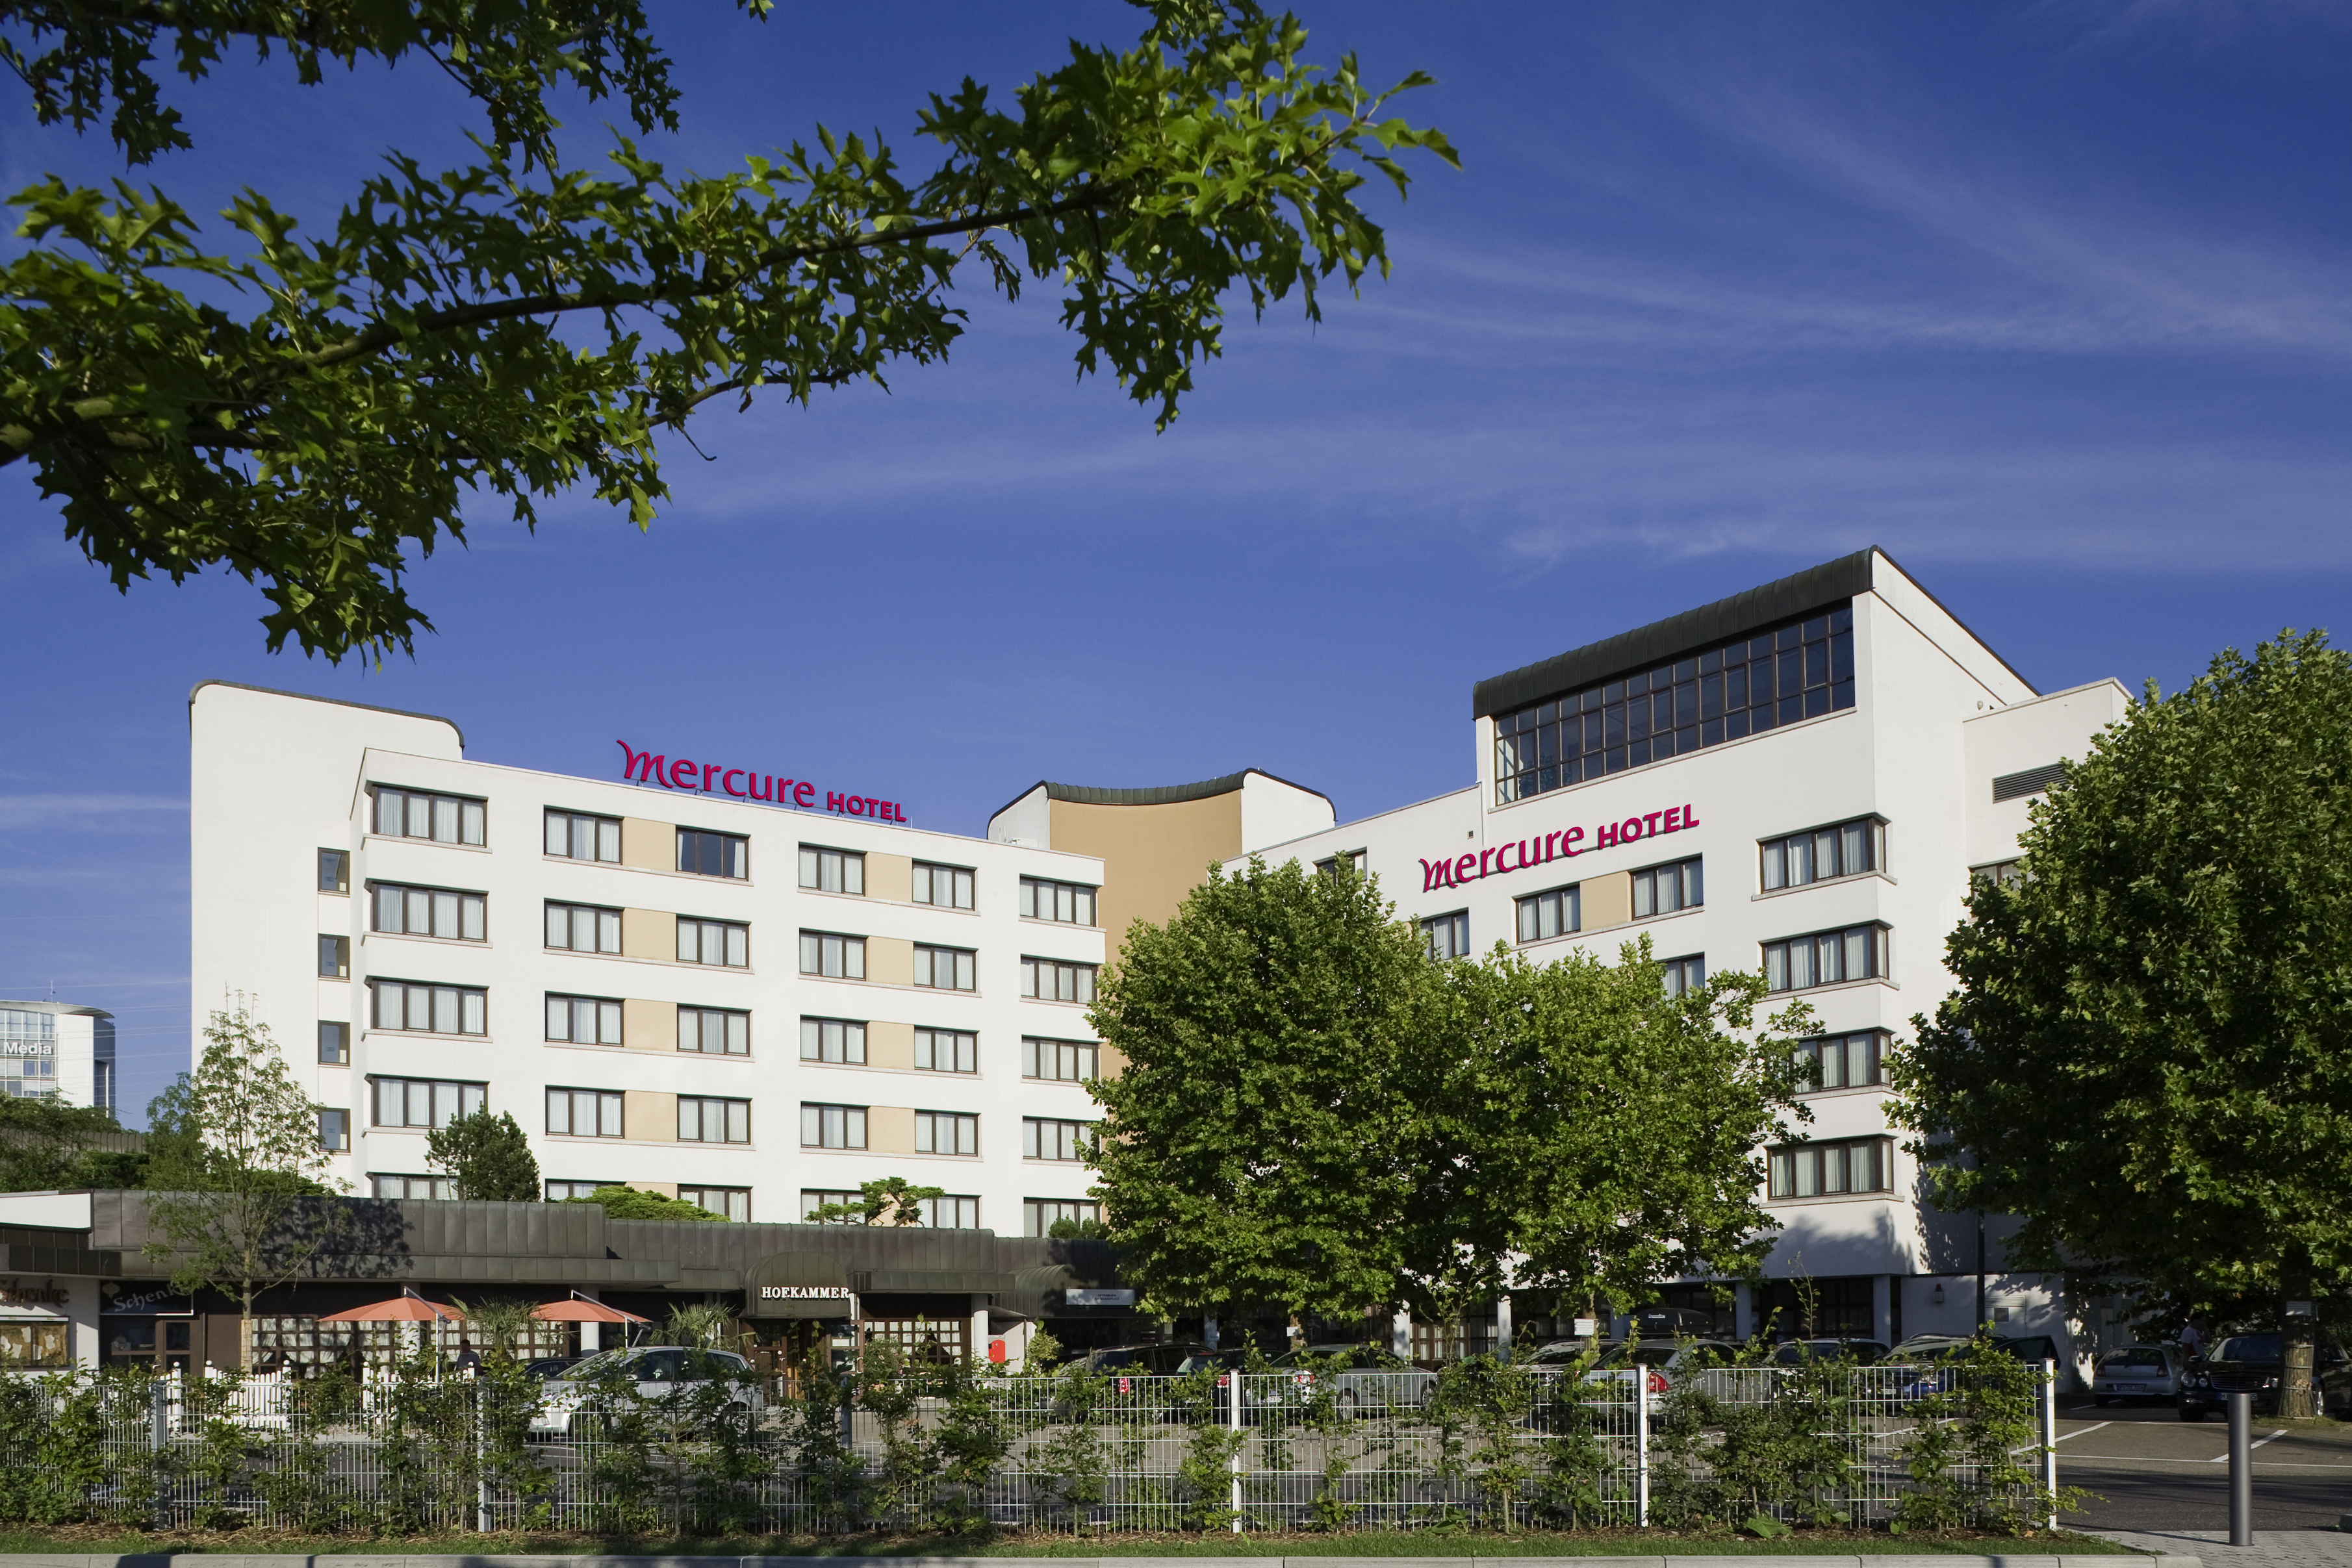 Mercure Hotel Offenburg am Messeplatz in Offenburg bei Reichenbach